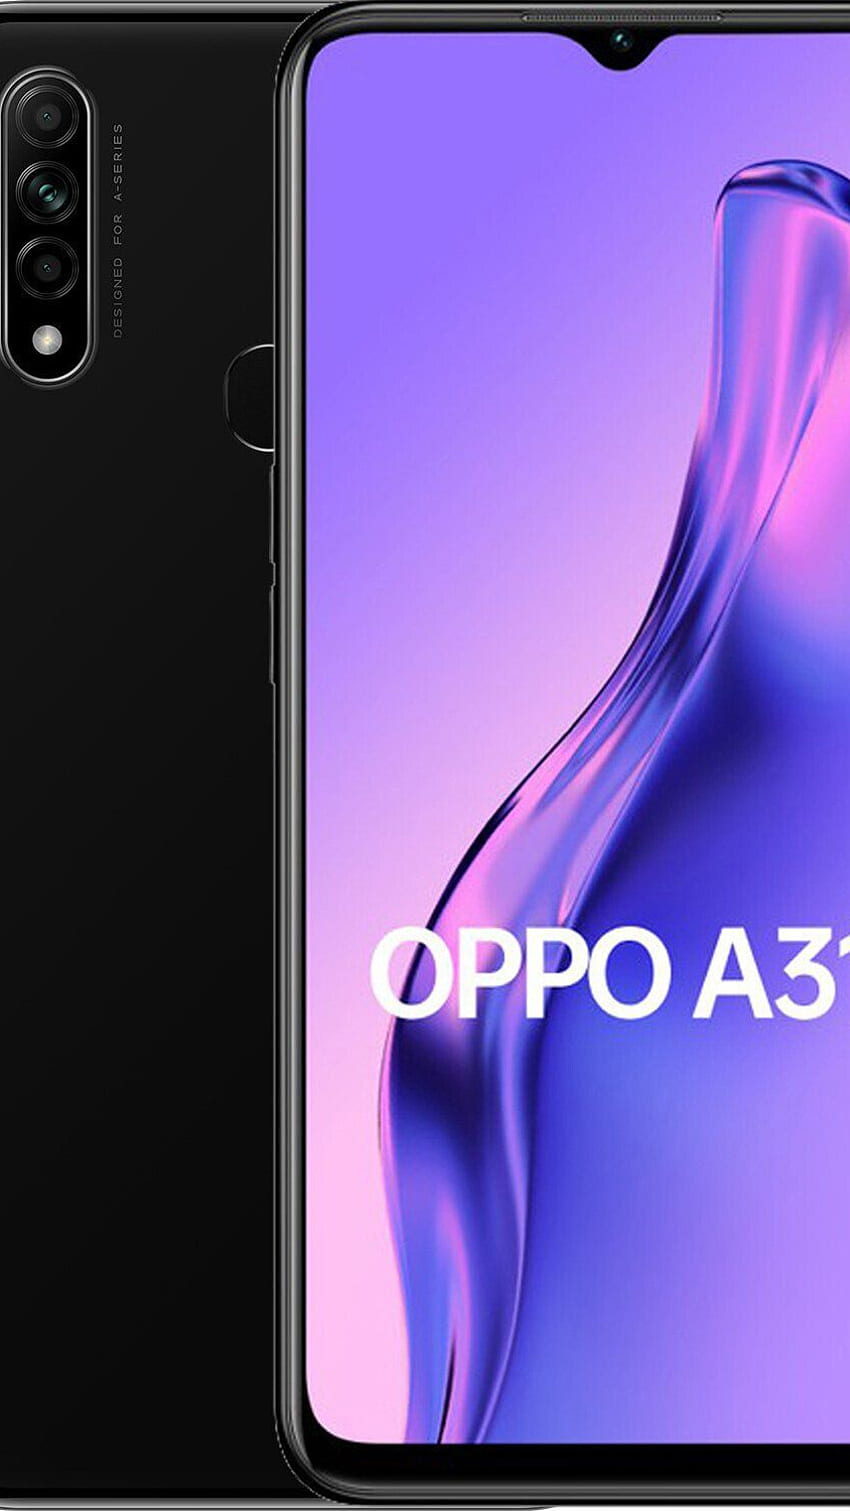 Oppo A31 HD phone wallpaper: Bạn đang tìm kiếm một hình nền độc đáo và tuyệt đẹp cho chiếc điện thoại Oppo A31 của mình? Hãy khám phá ngay bộ sưu tập hình nền HD đa dạng và phong phú tại đây. Với hàng ngàn lựa chọn đầy màu sắc và sáng tạo, bạn sẽ dễ dàng tìm được bức ảnh yêu thích để làm hình nền cho chiếc điện thoại Oppo A31 của mình.